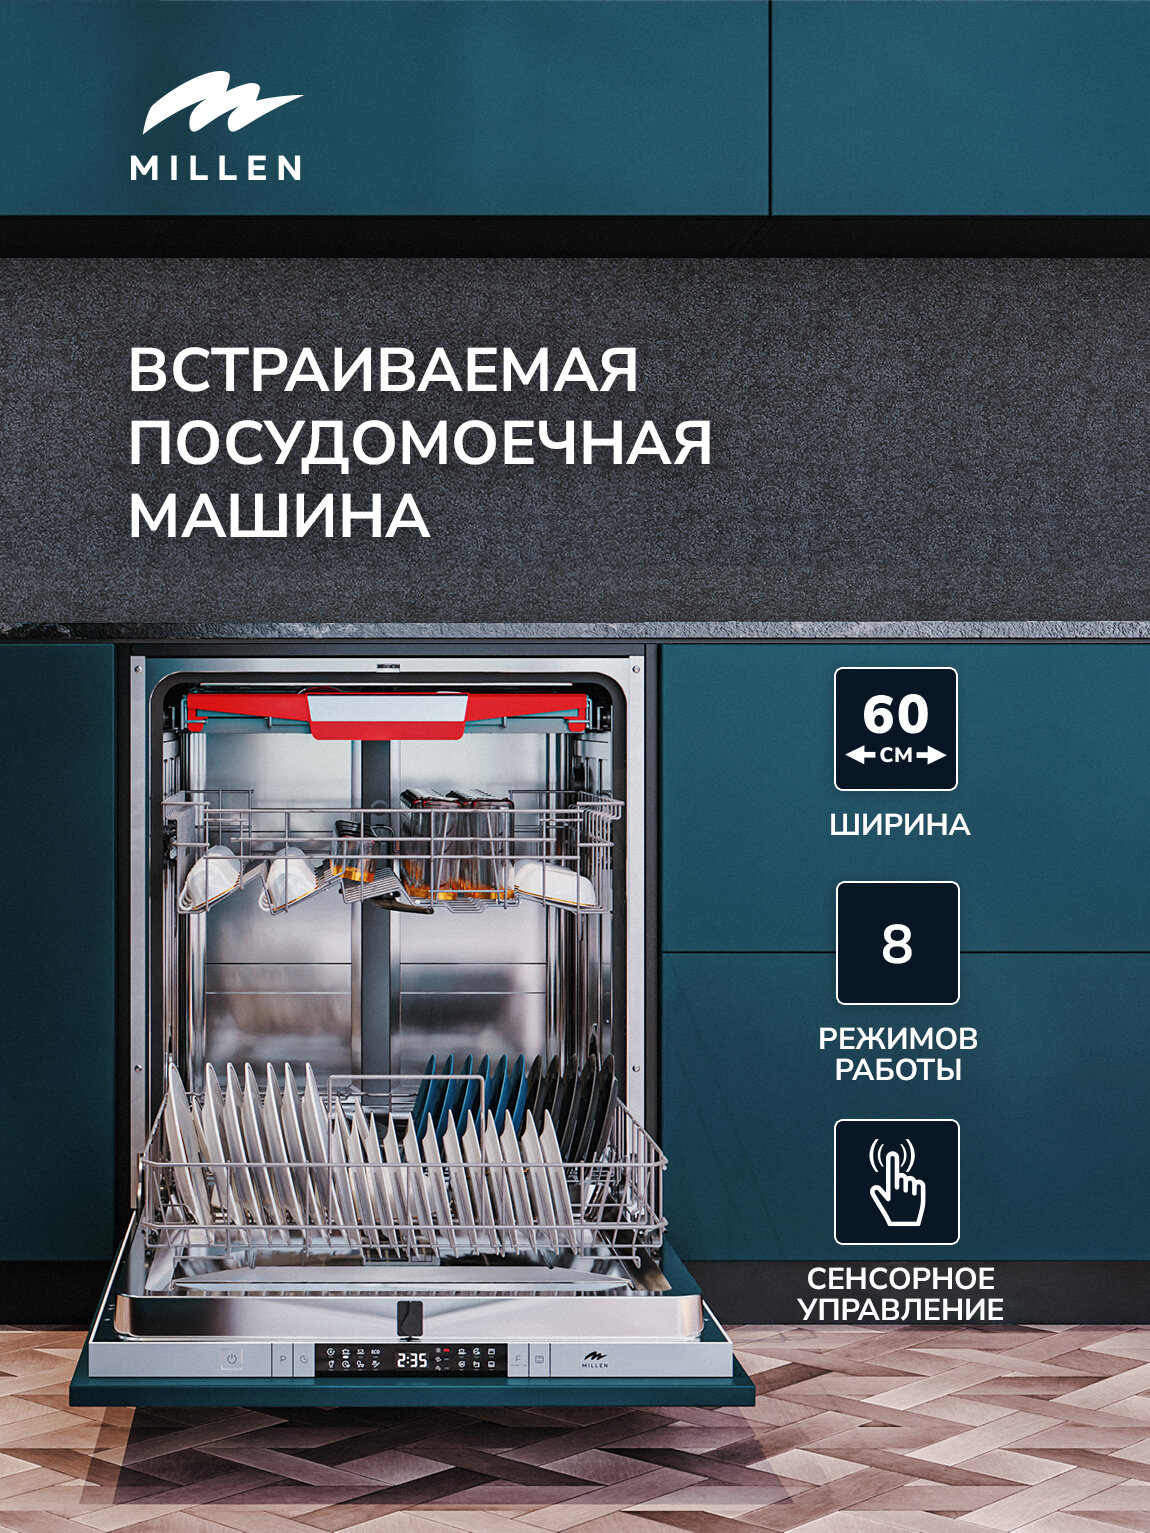 Встраиваемая посудомоечная машина MILLEN MDW 603